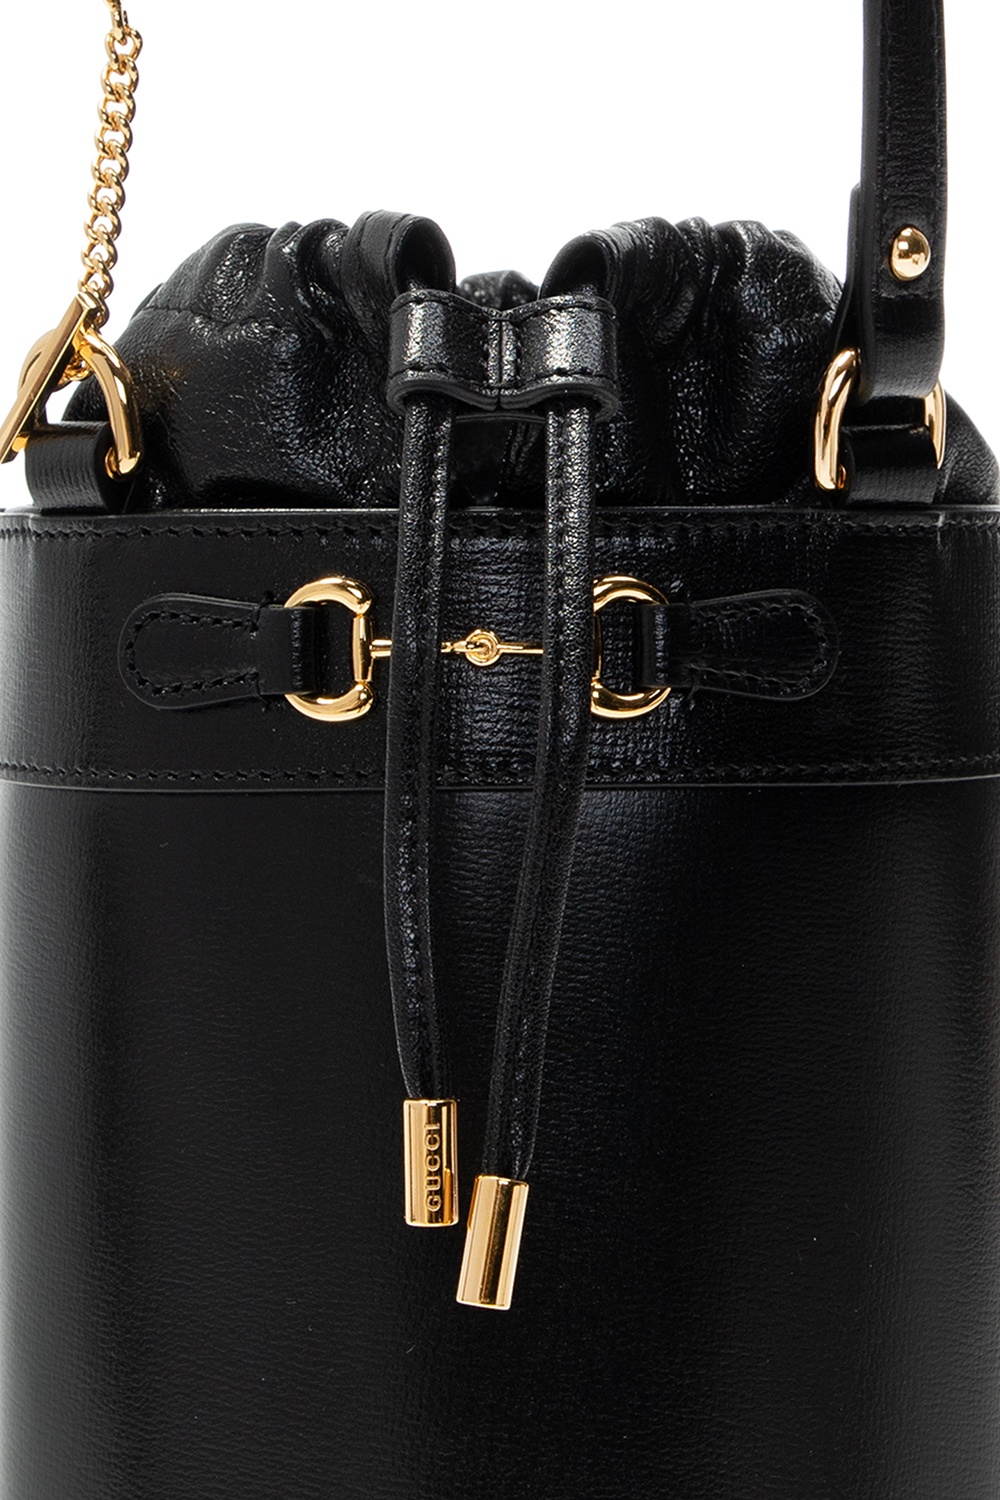 Gucci ‘Horsebit 1955’ hand bag